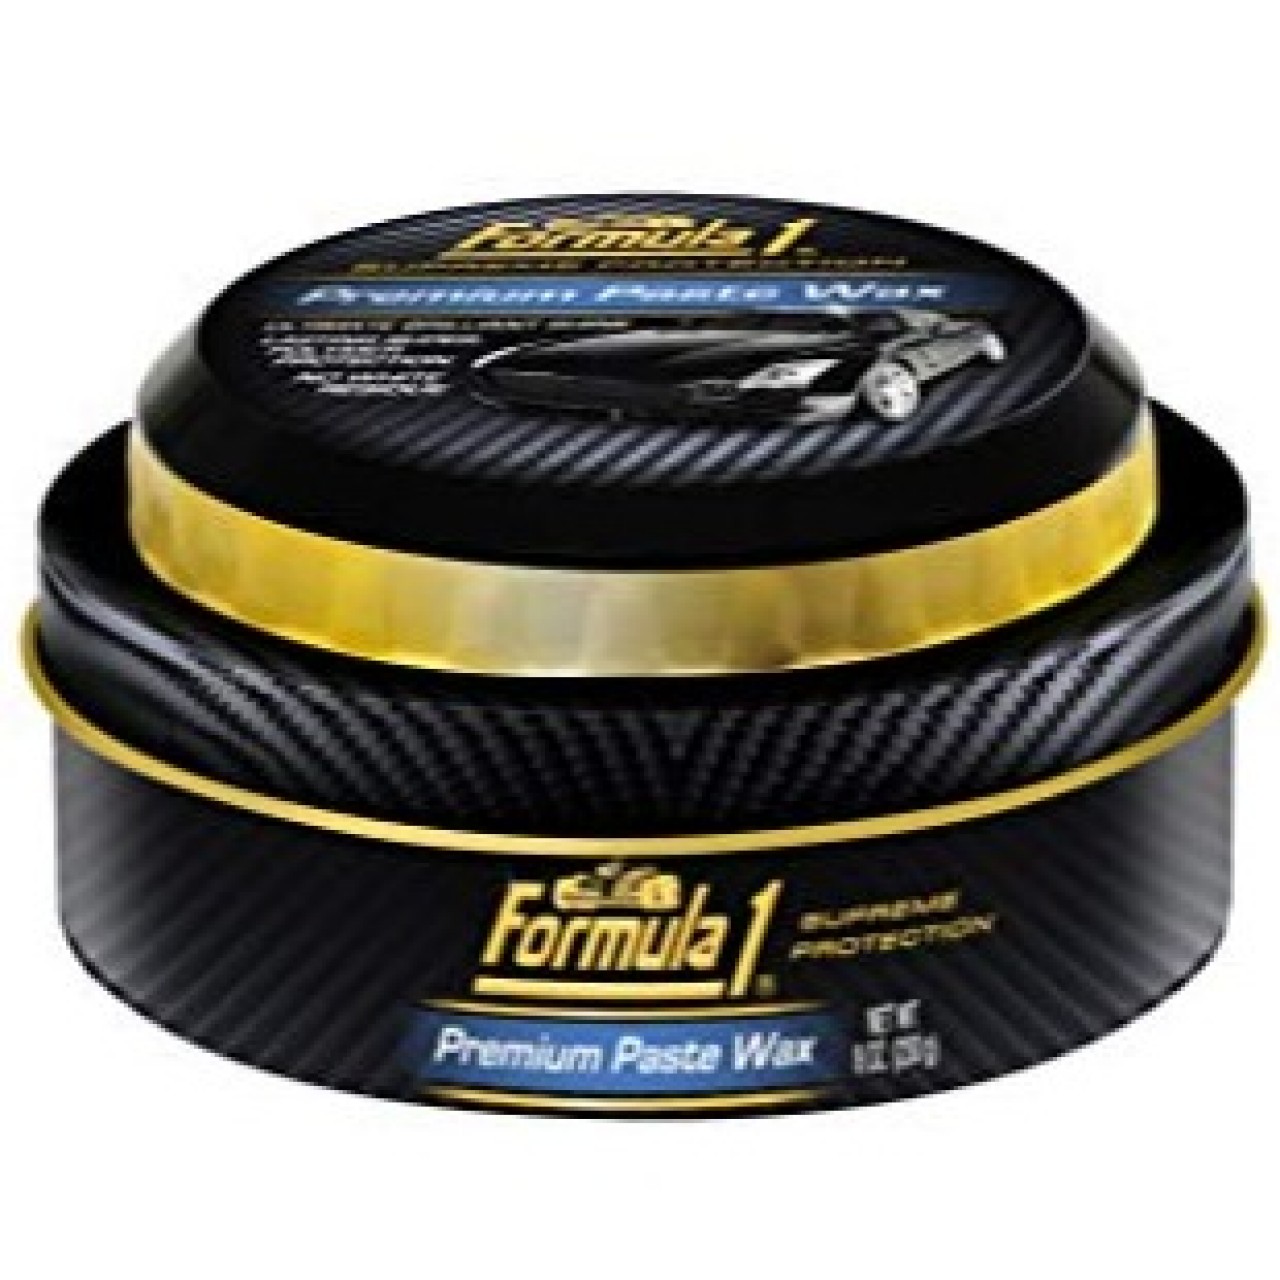 Formula1 Premium Car Paste Wax - Paint Protection